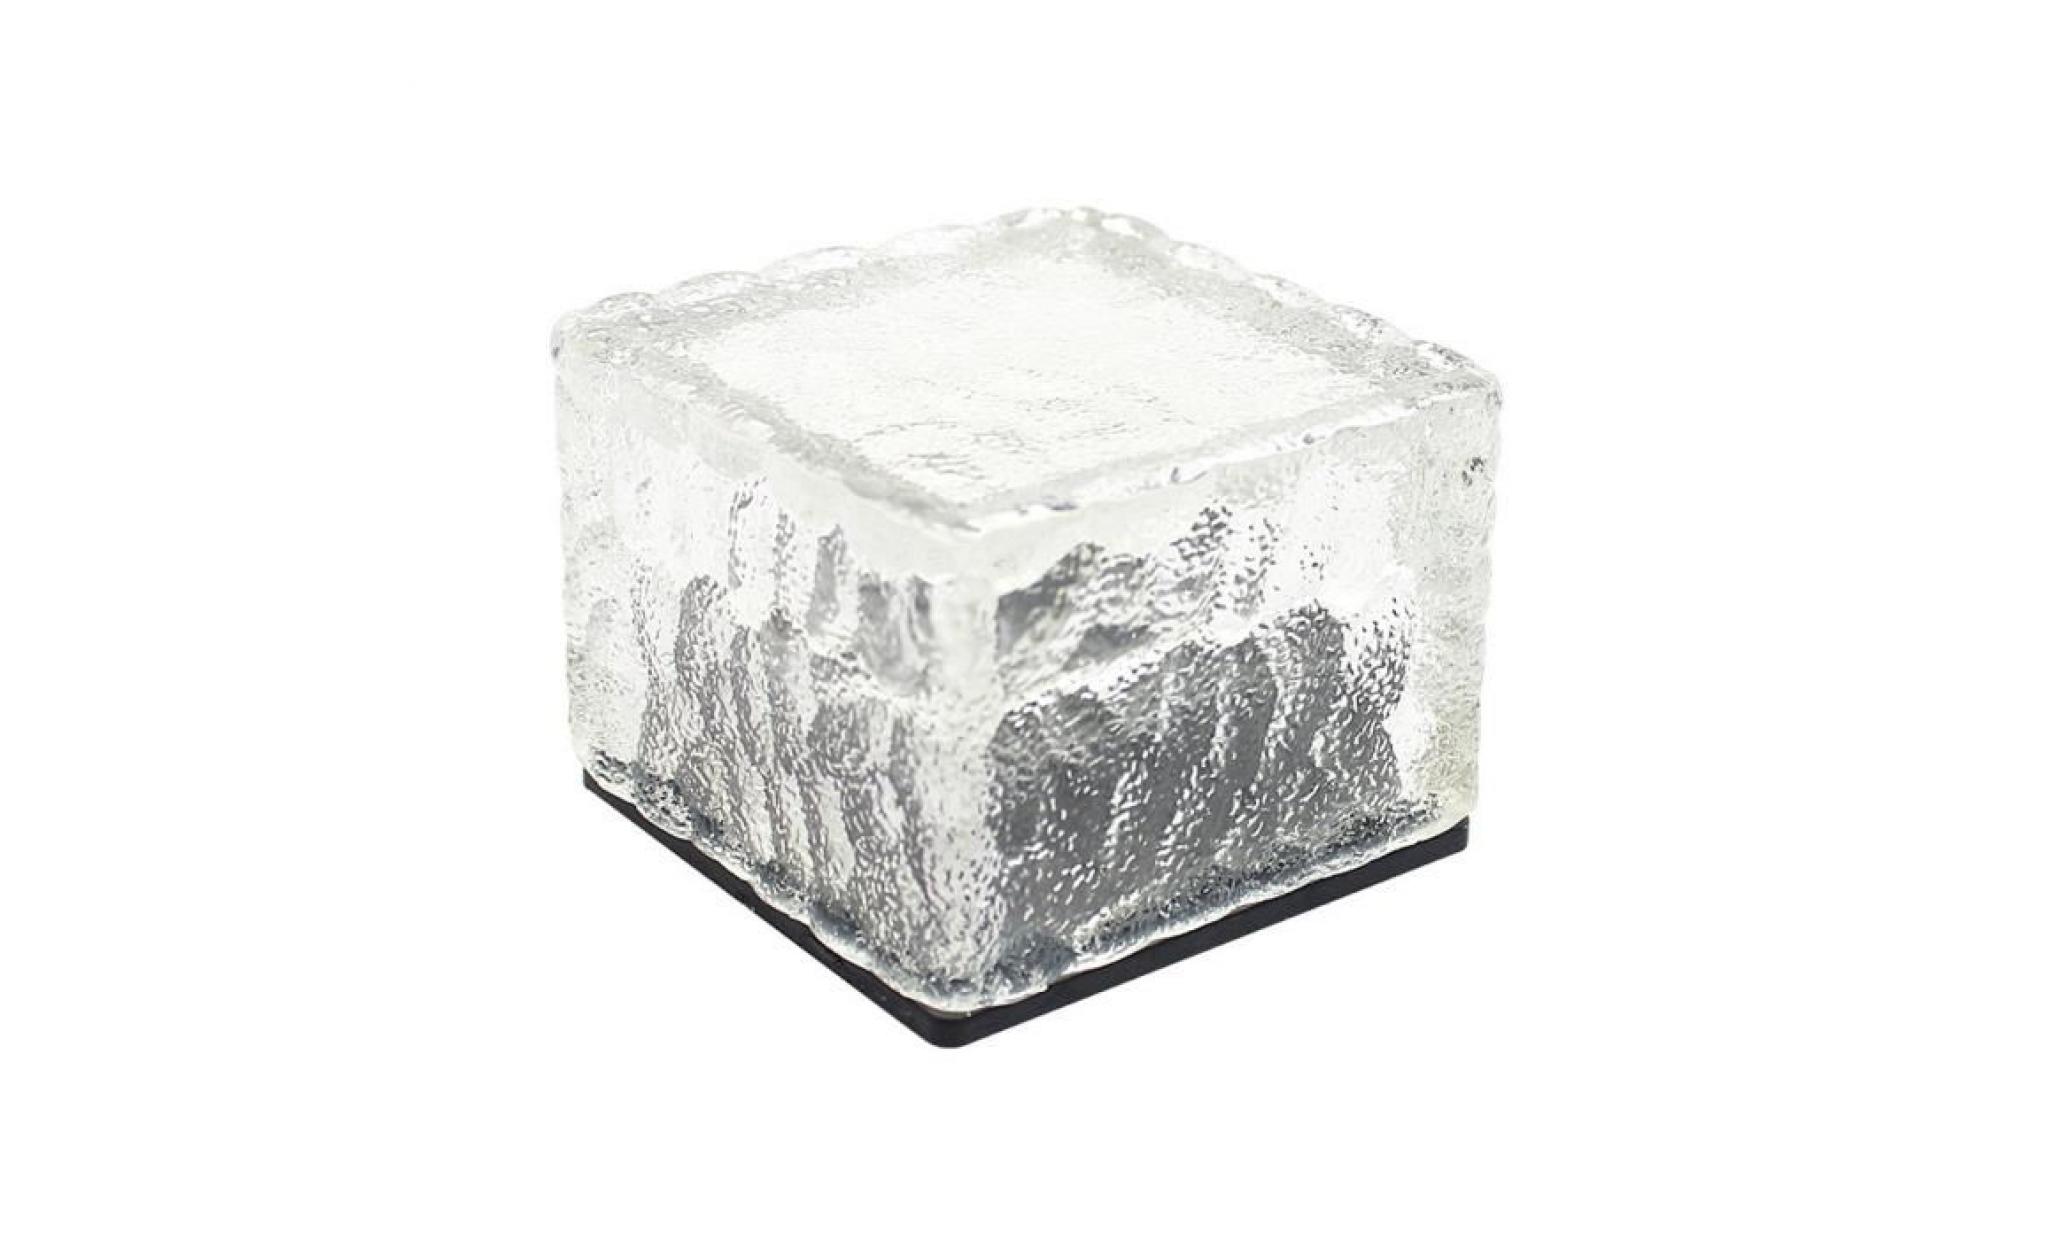 led énergie solaire change de couleur ice cube en cristal extérieur en verre brique hot lights anonywego880 pas cher